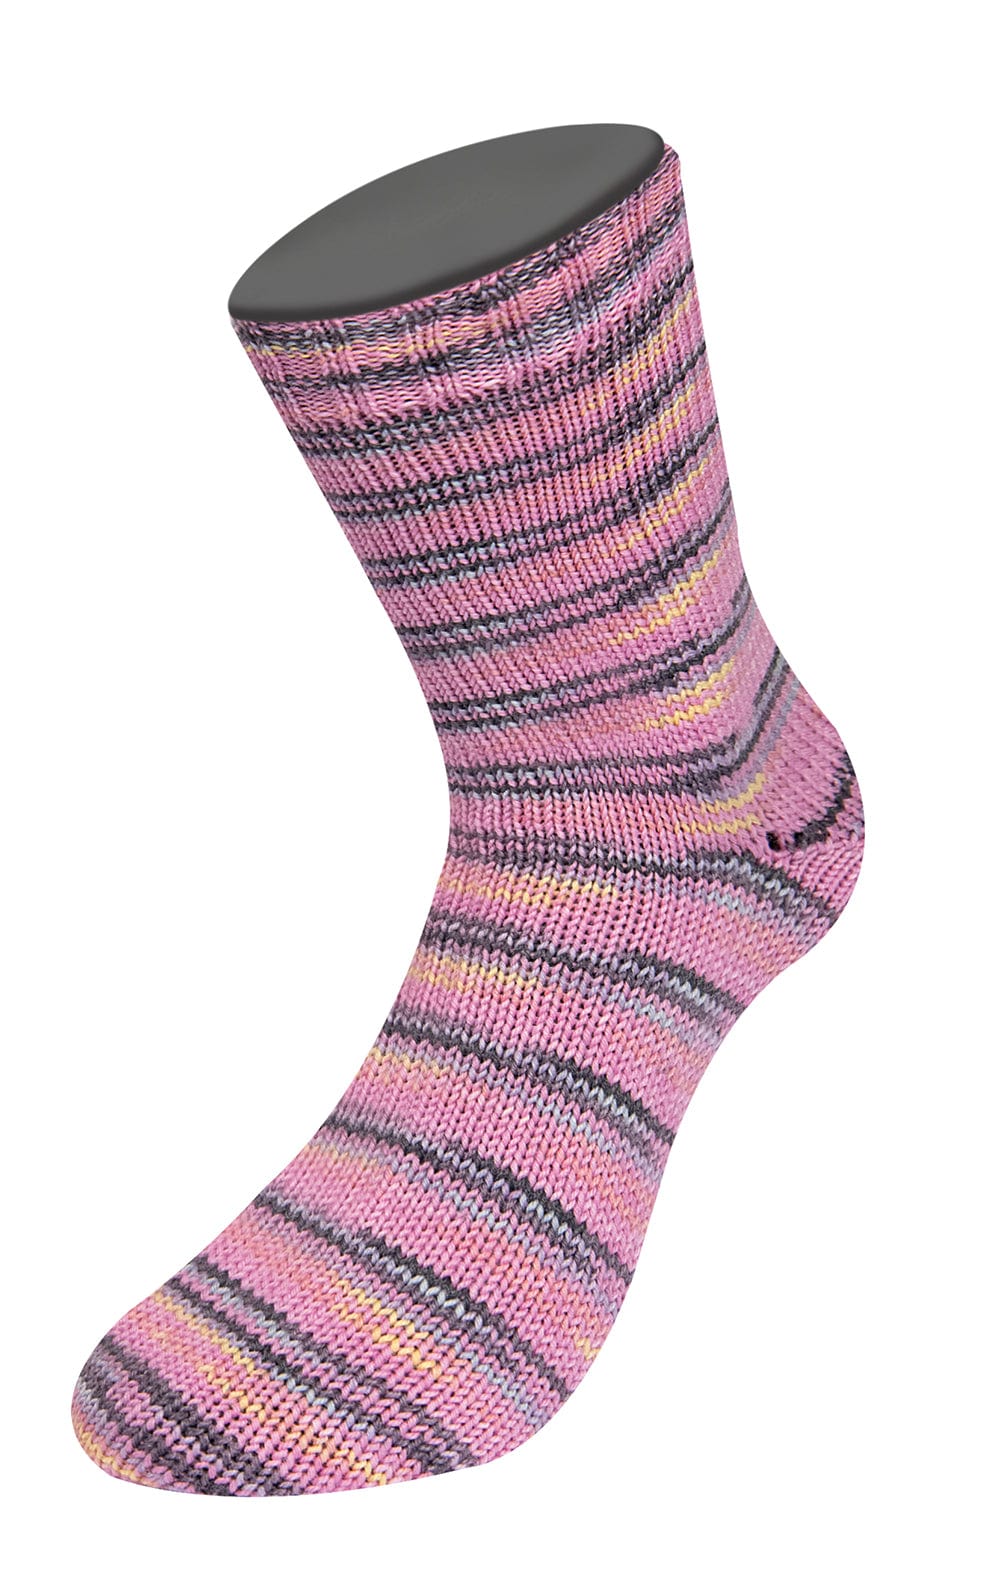 Socken 4-fach- AB MEILENWEIT 100 CASHMERE STREET - Strickset von LANA GROSSA jetzt online kaufen bei OONIQUE